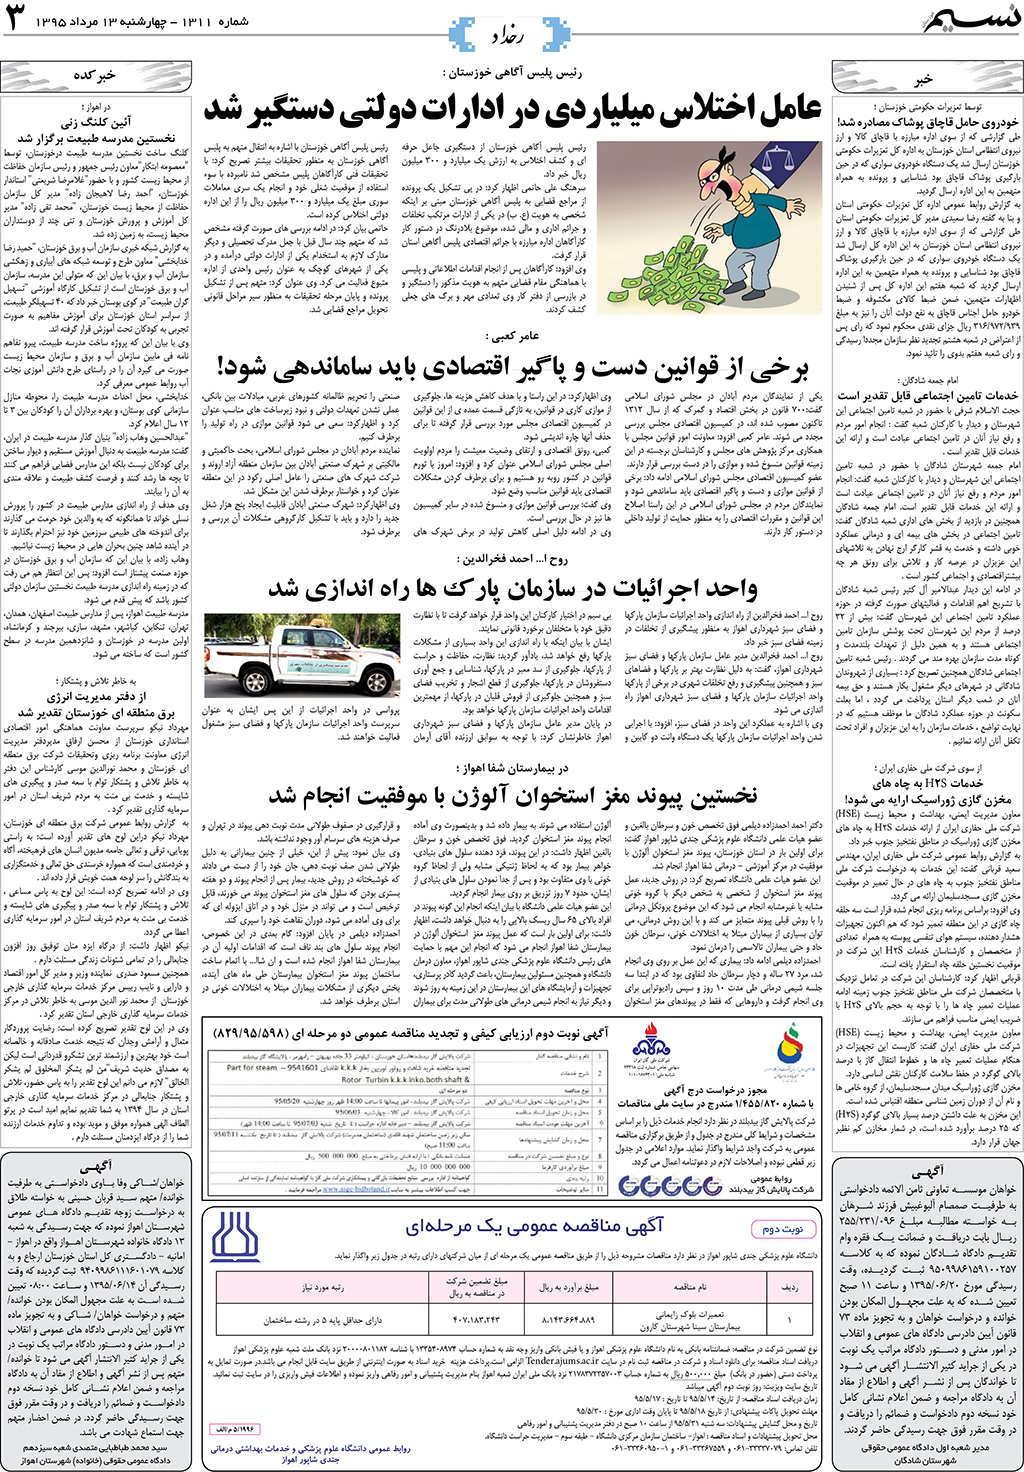 صفحه رخداد روزنامه نسیم شماره 1311